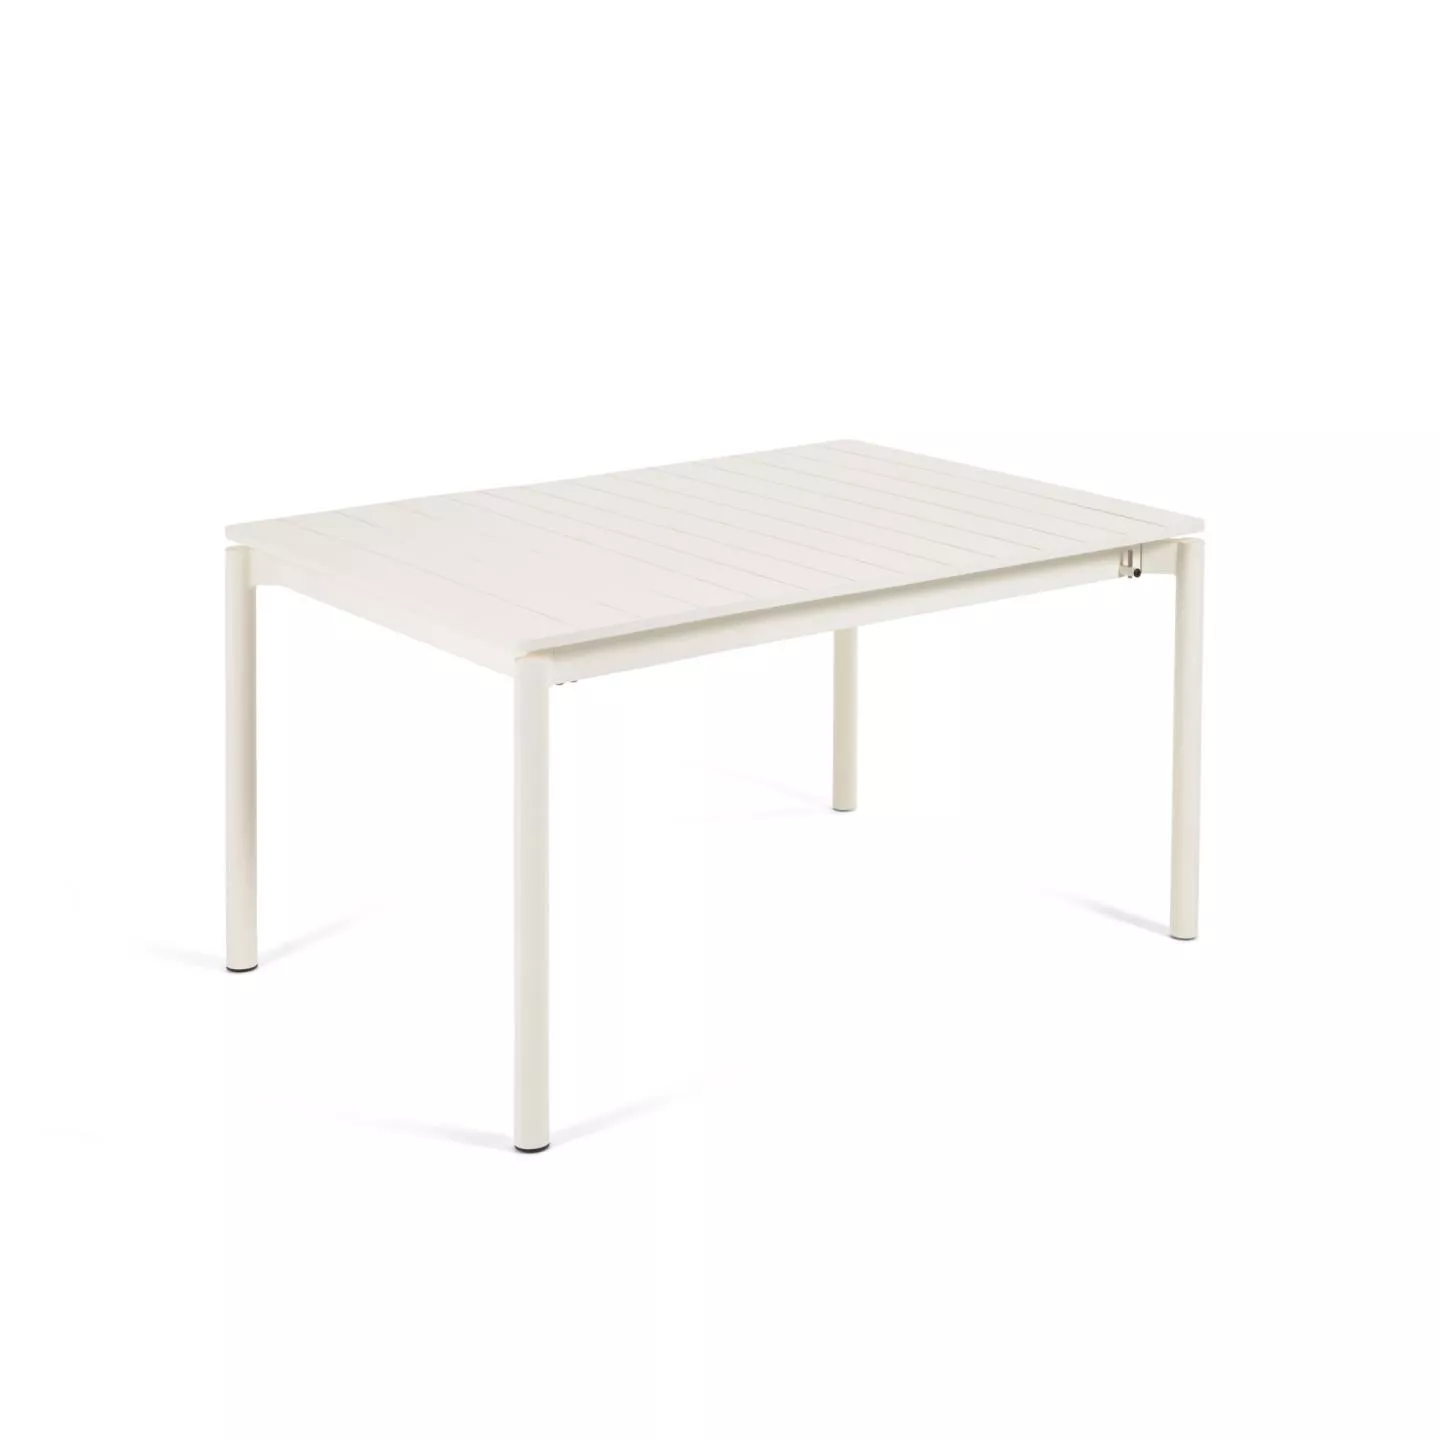 Раздвижной стол La Forma Zaltana белый 140 x 90 см